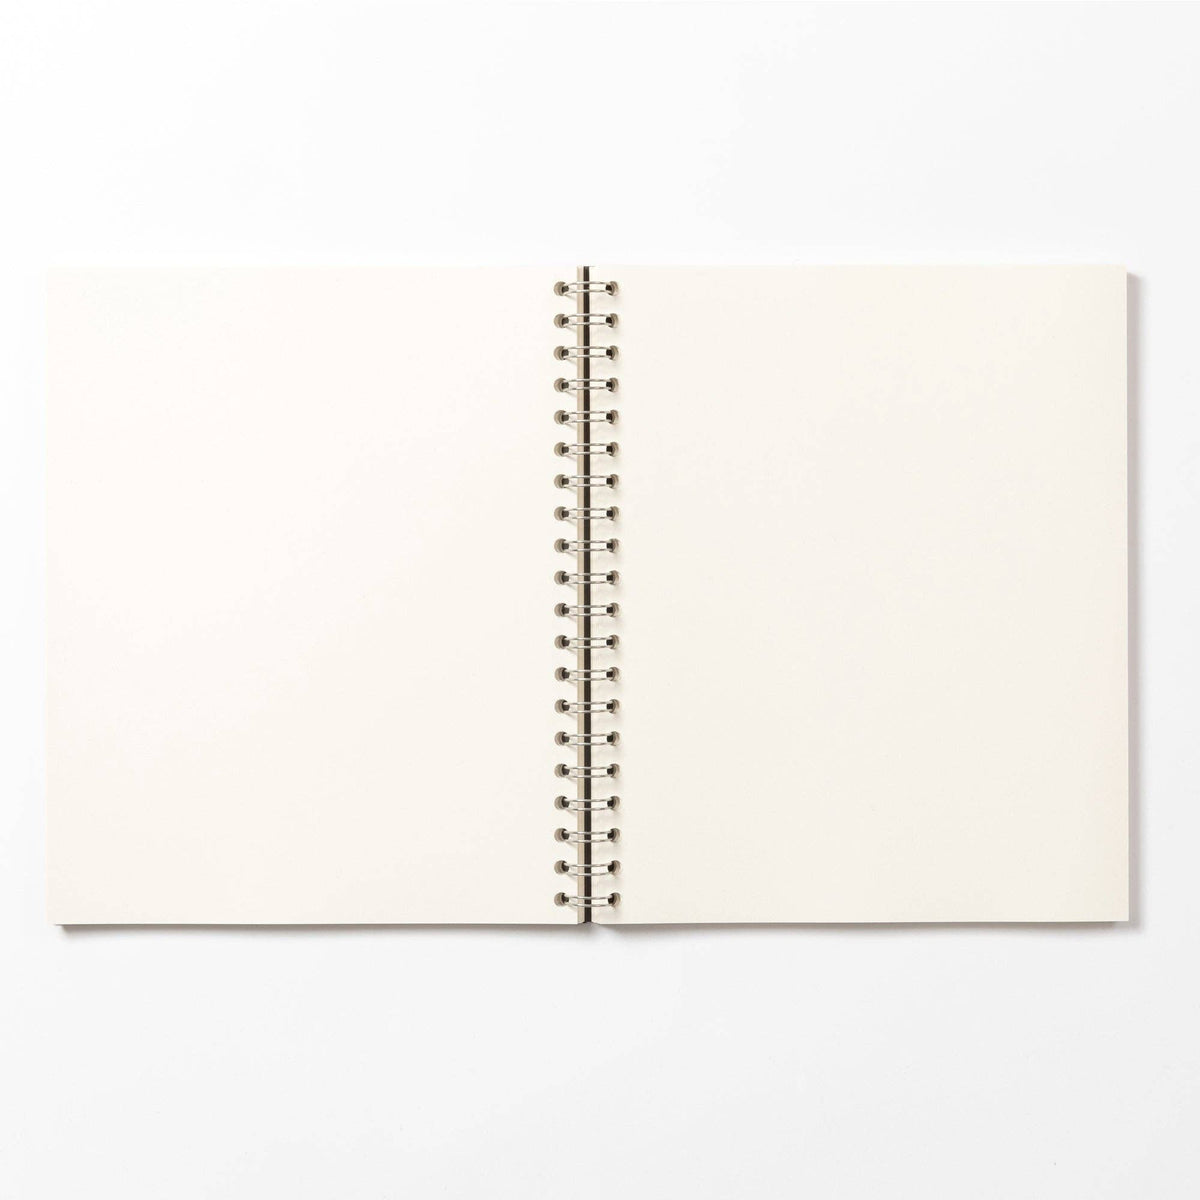 Coffee notes Wirebound Notebook: Grey / Medio